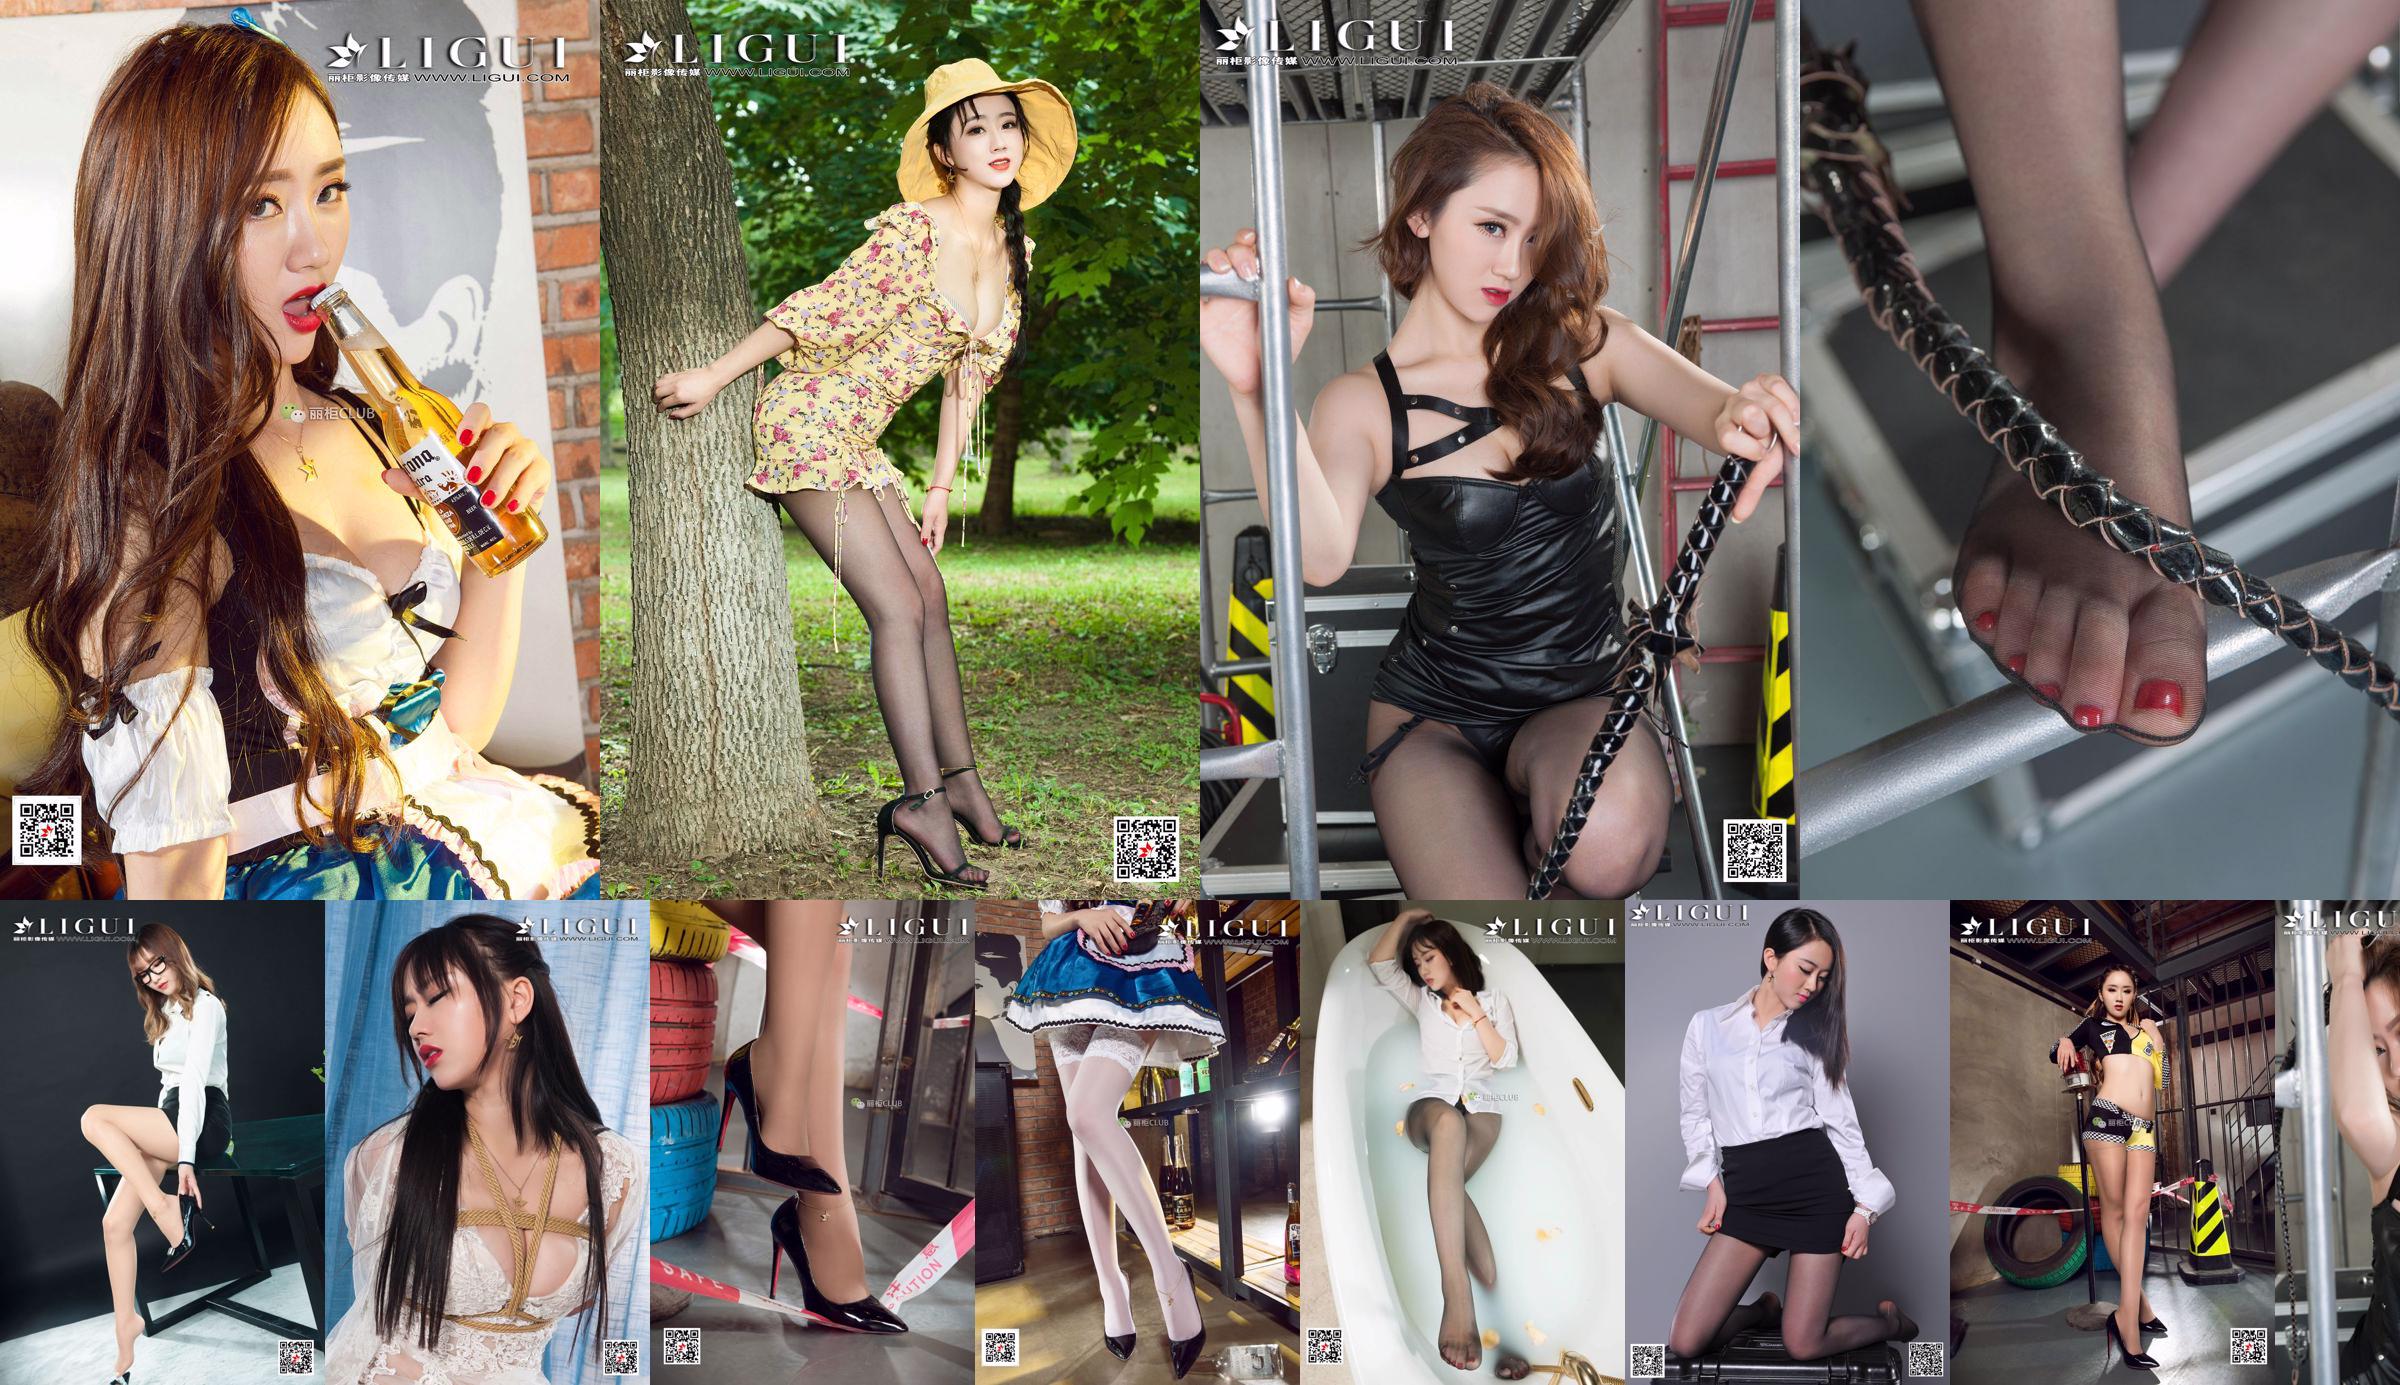 Modelle Ranran e Wen Rui "La tentazione delle ragazze della scuola gemella con i piedi di seta" [Ligui Ligui] No.947977 Pagina 1